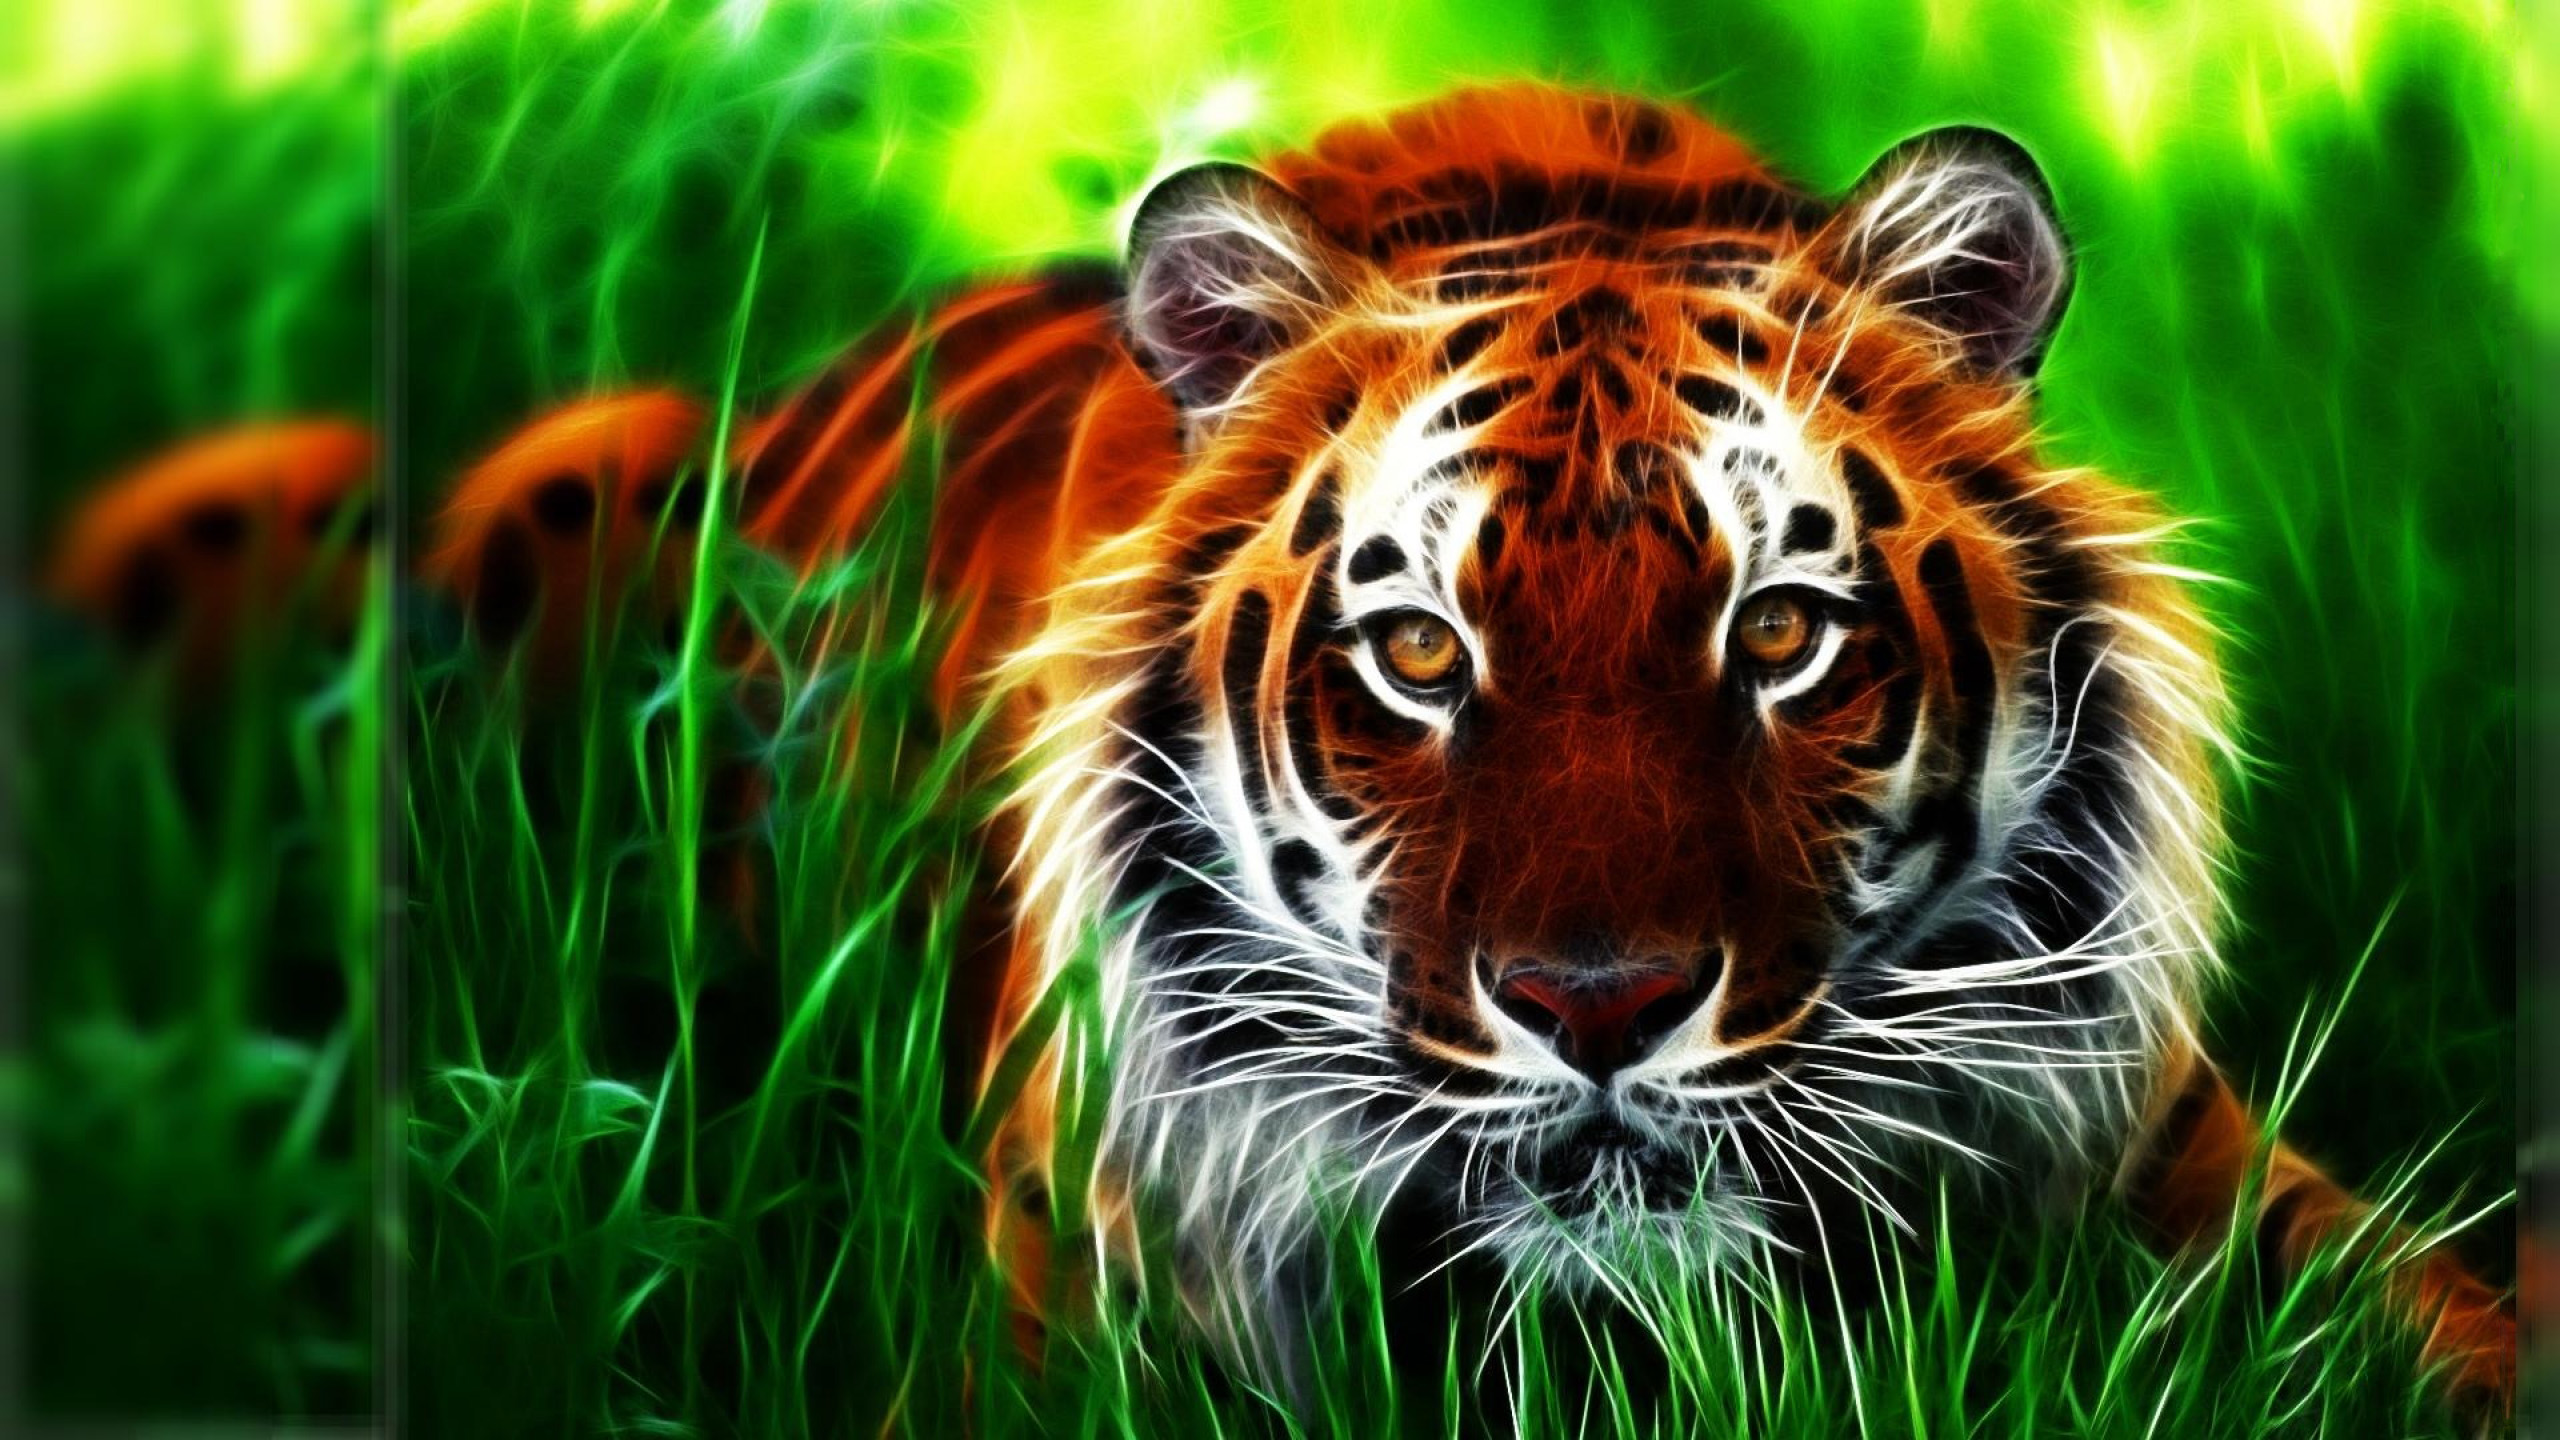 Tiger 3d Computer Digital Hd Wallpaper 2560x1440 : 